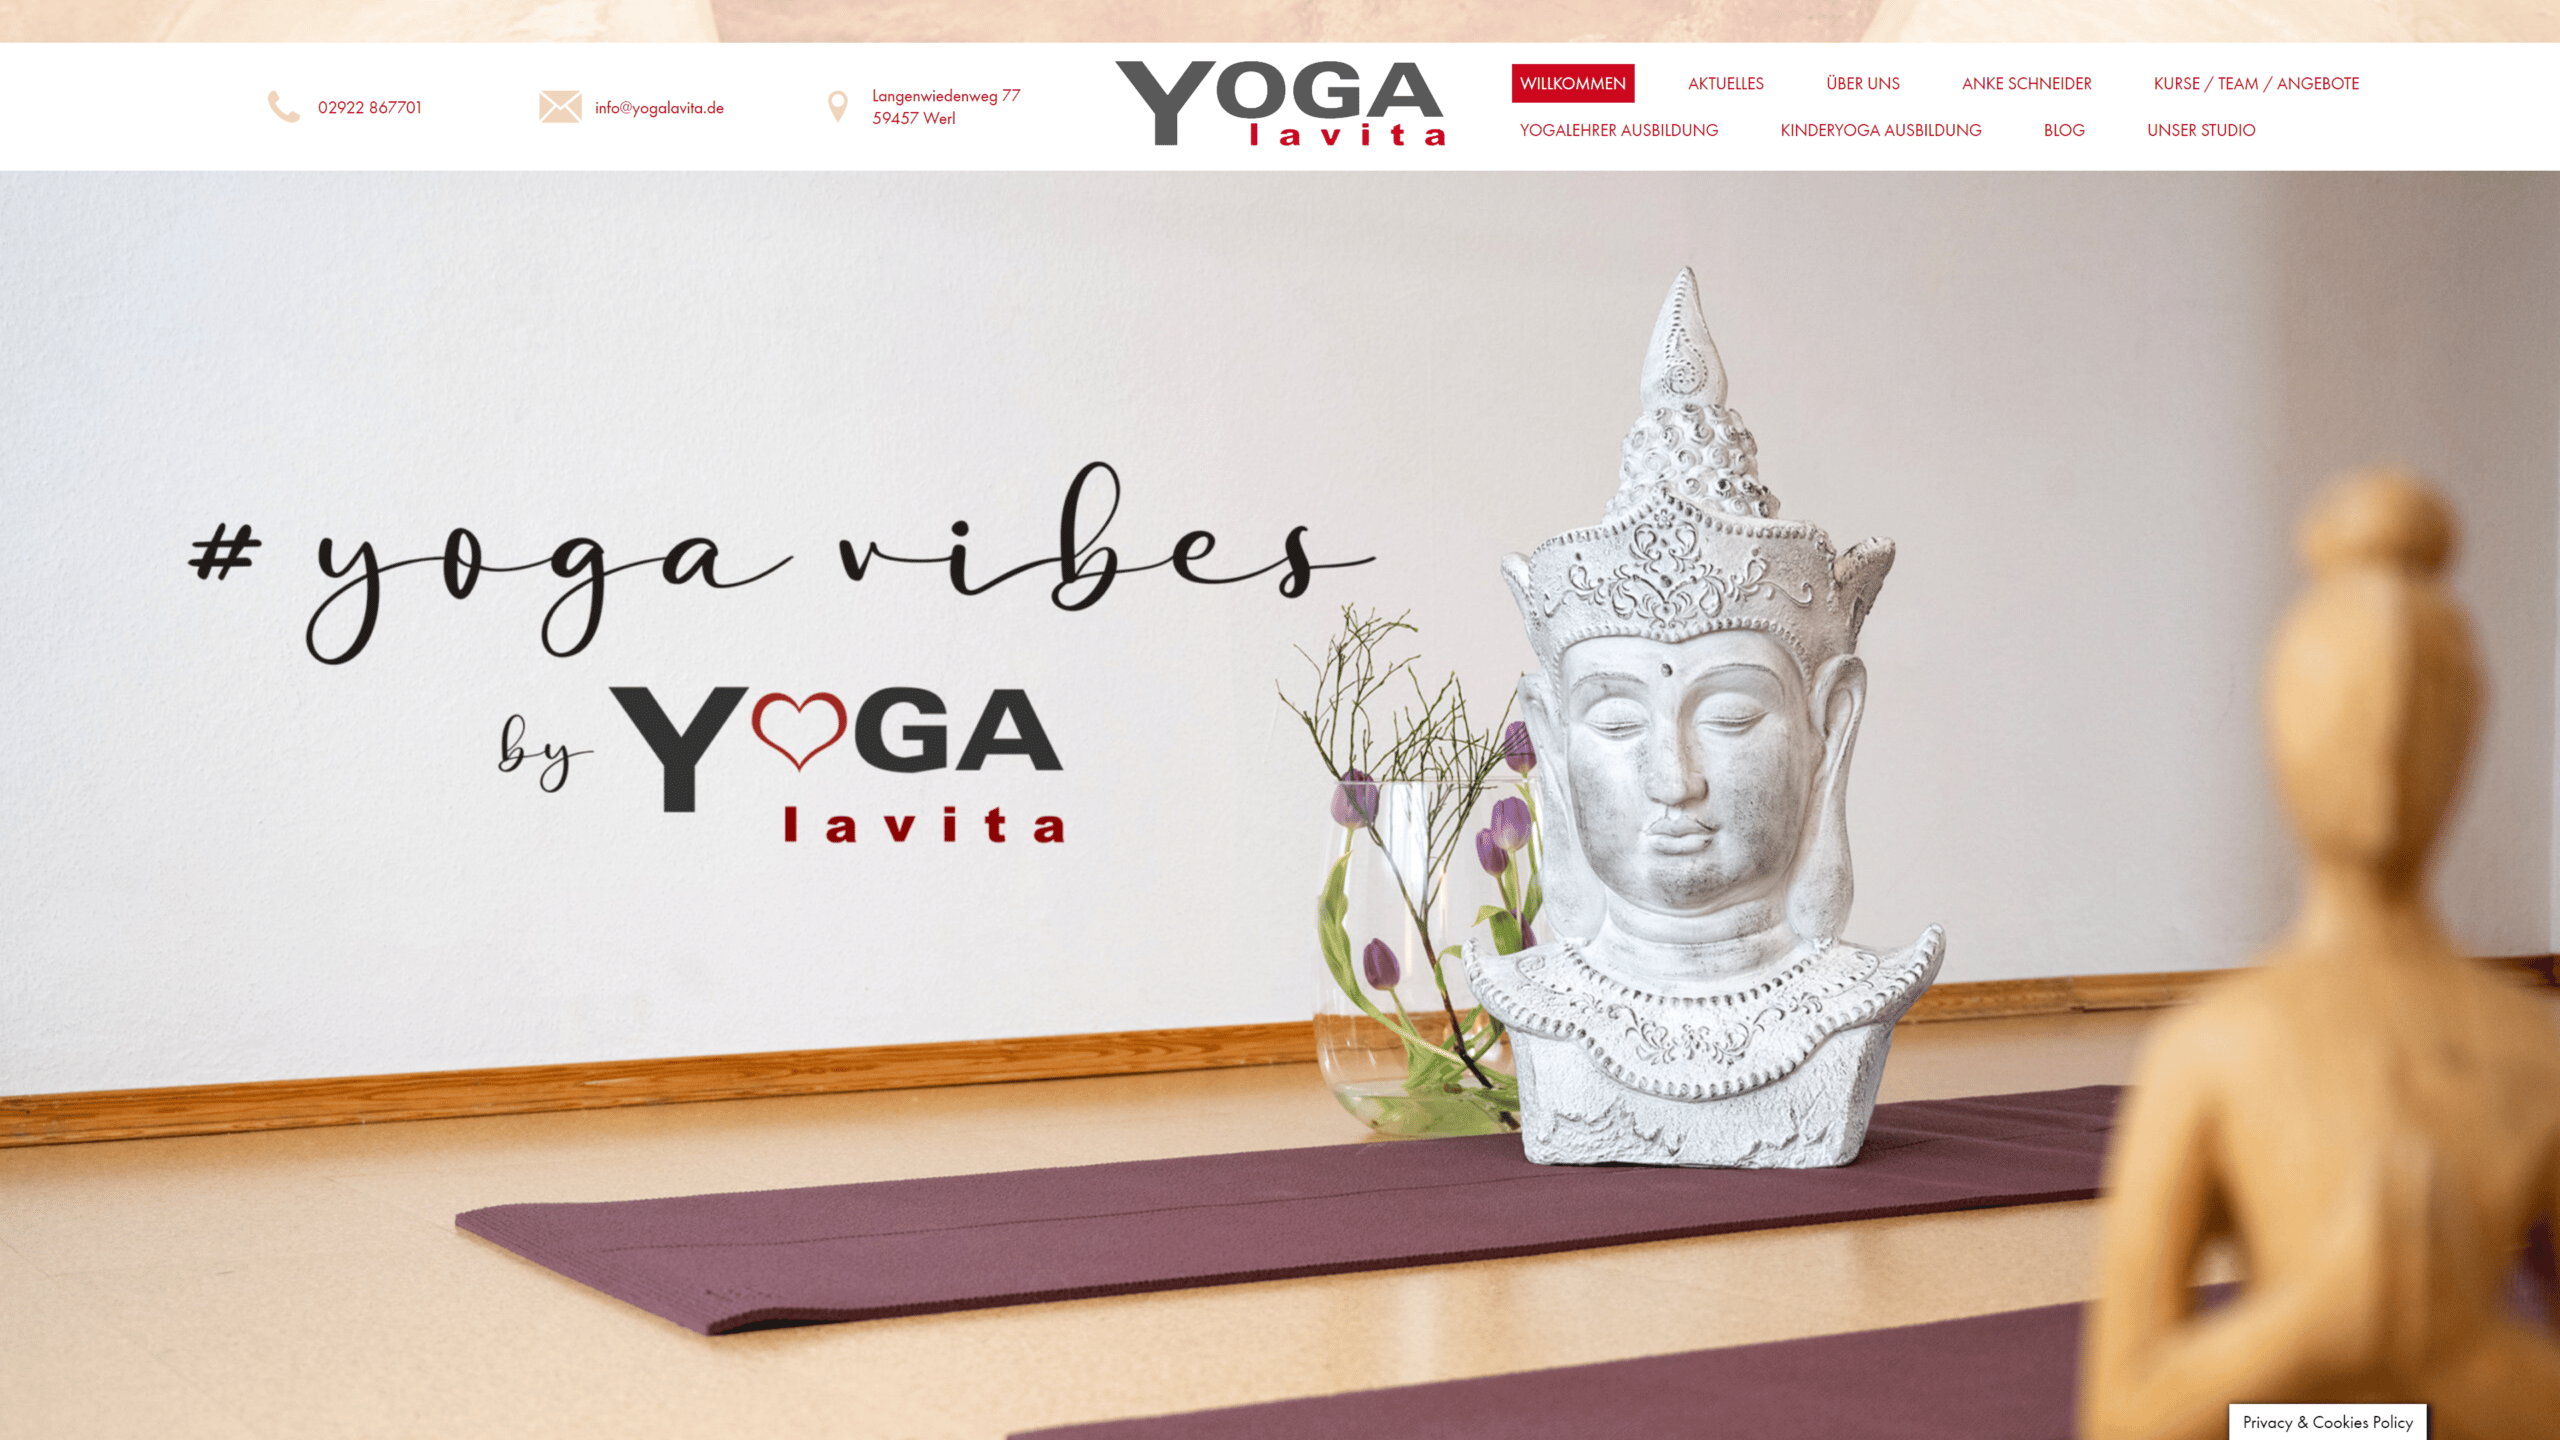 Ansicht auf dem Desktop von "Projekt: Yogalavita"